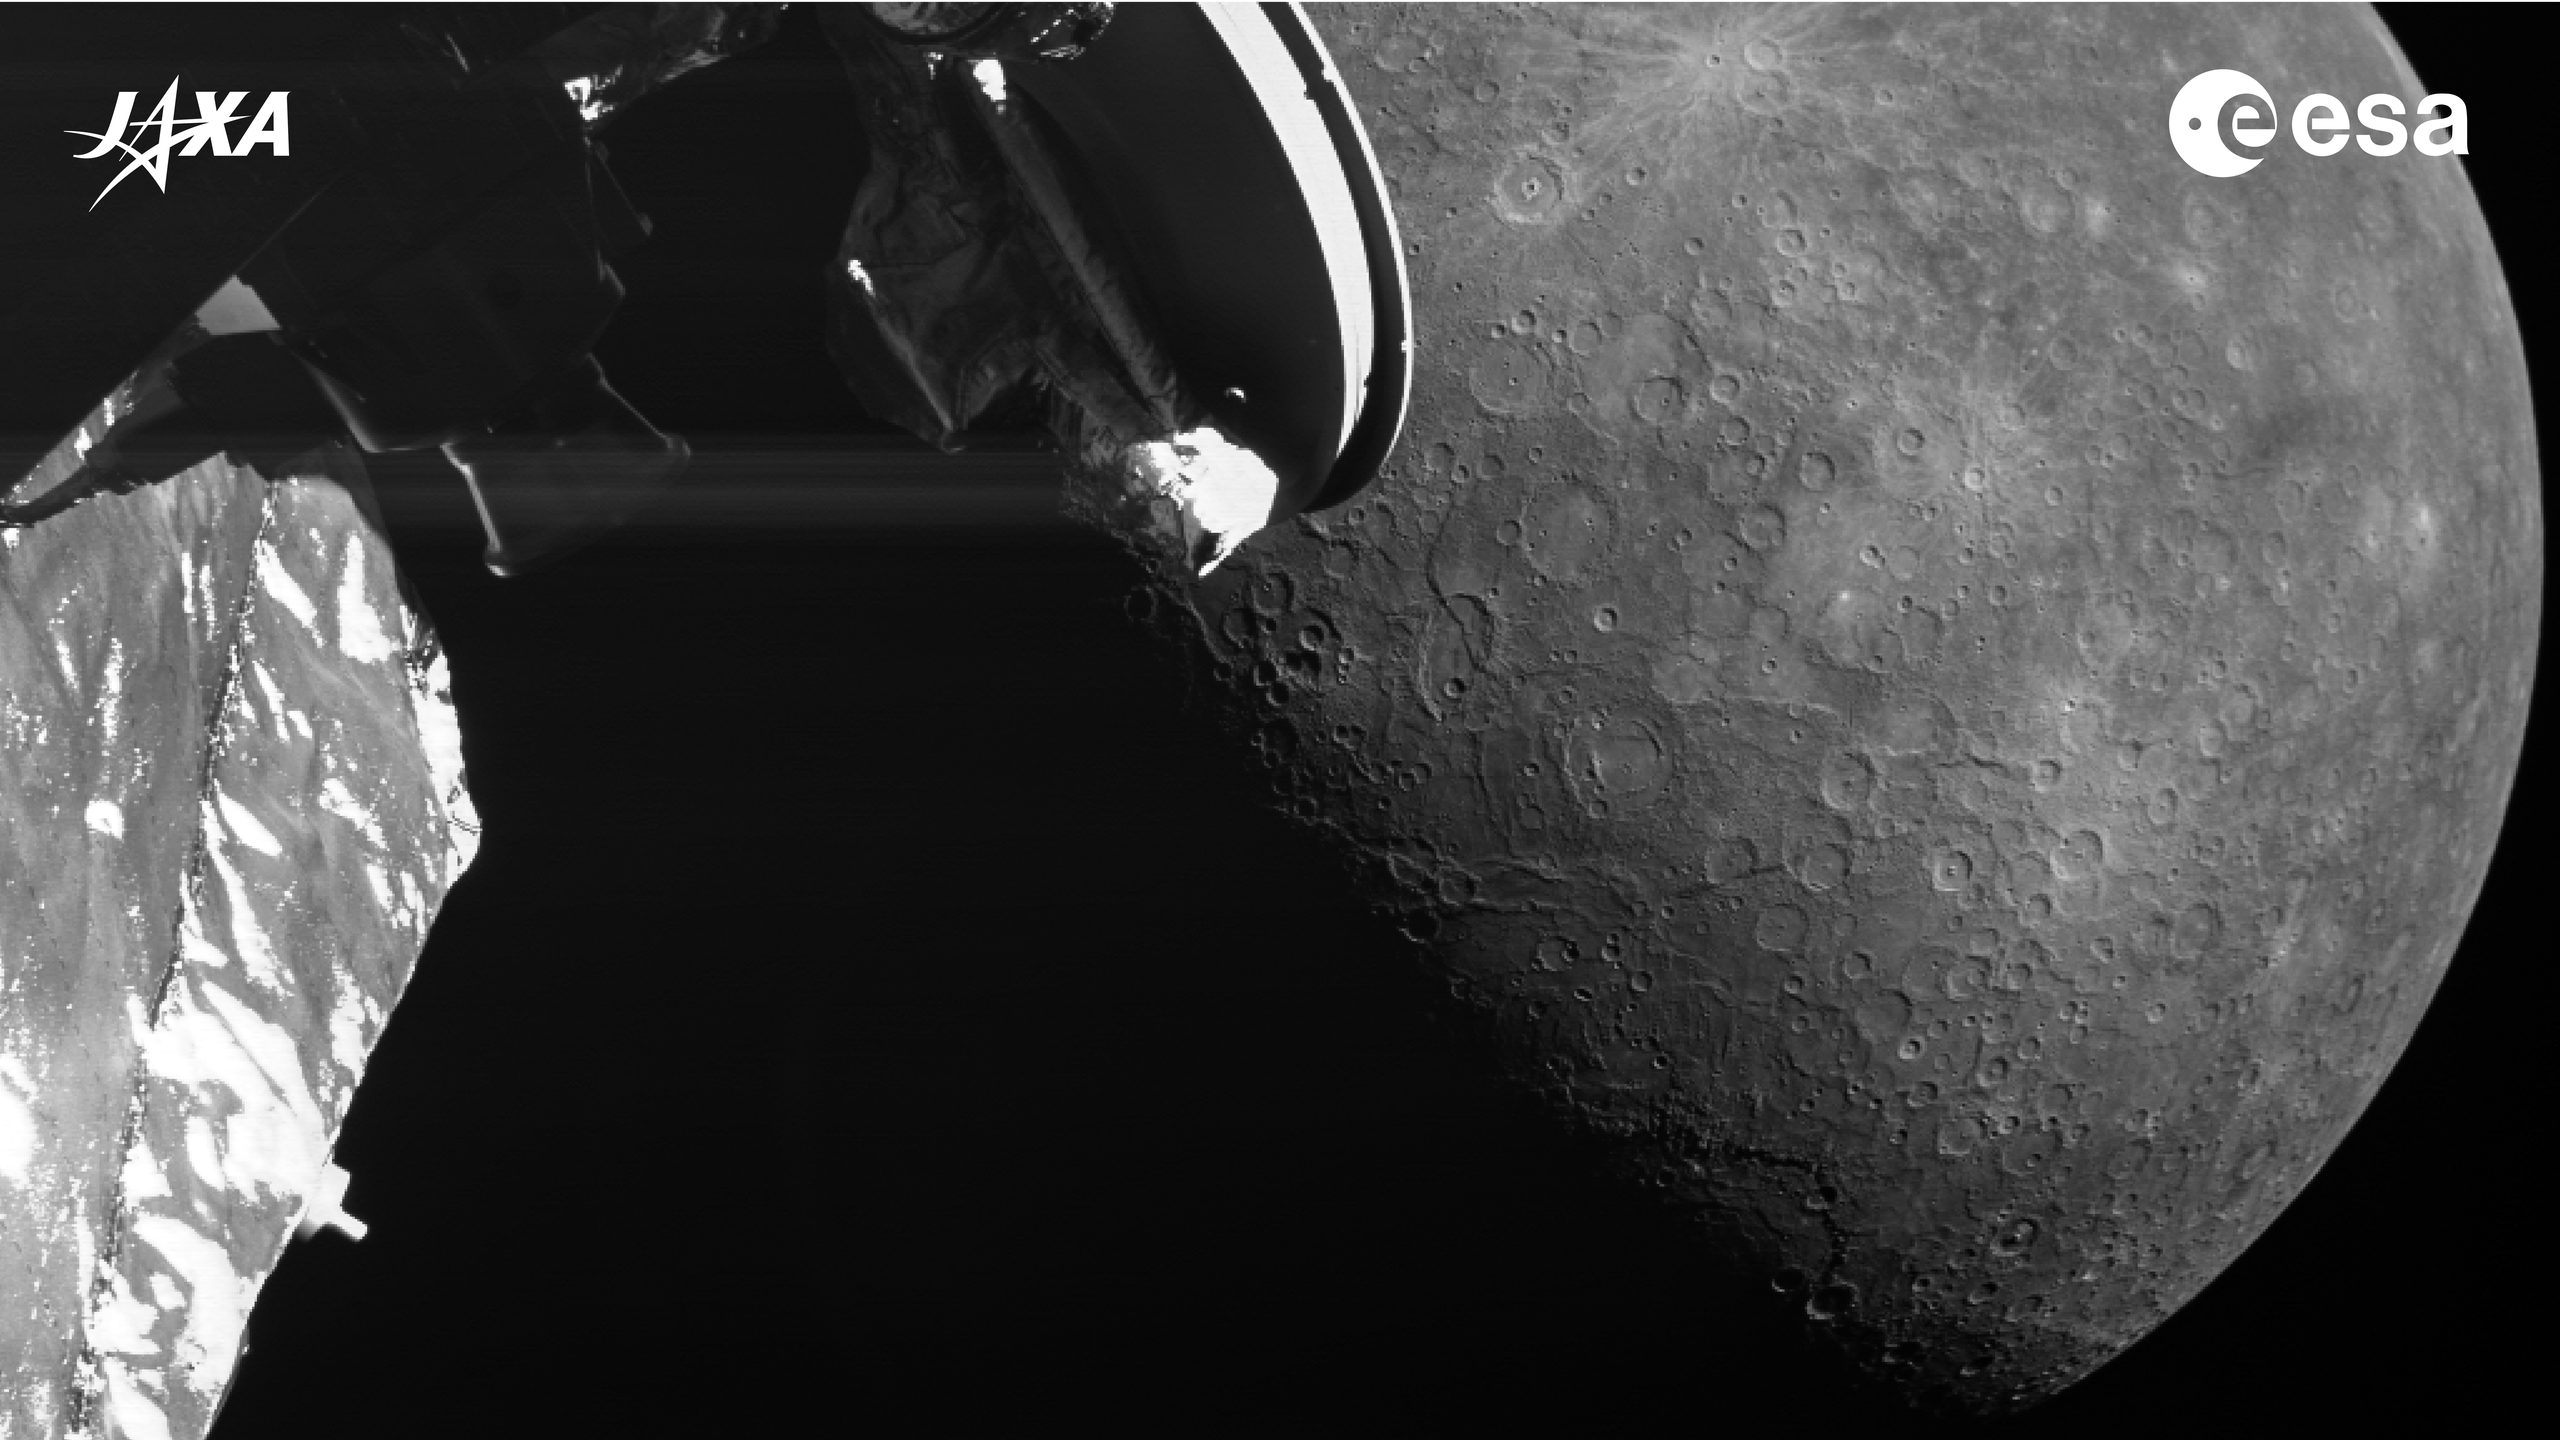 Nuova scoperta su Mercurio: un cratere rivelato durante missione BepiColombo"